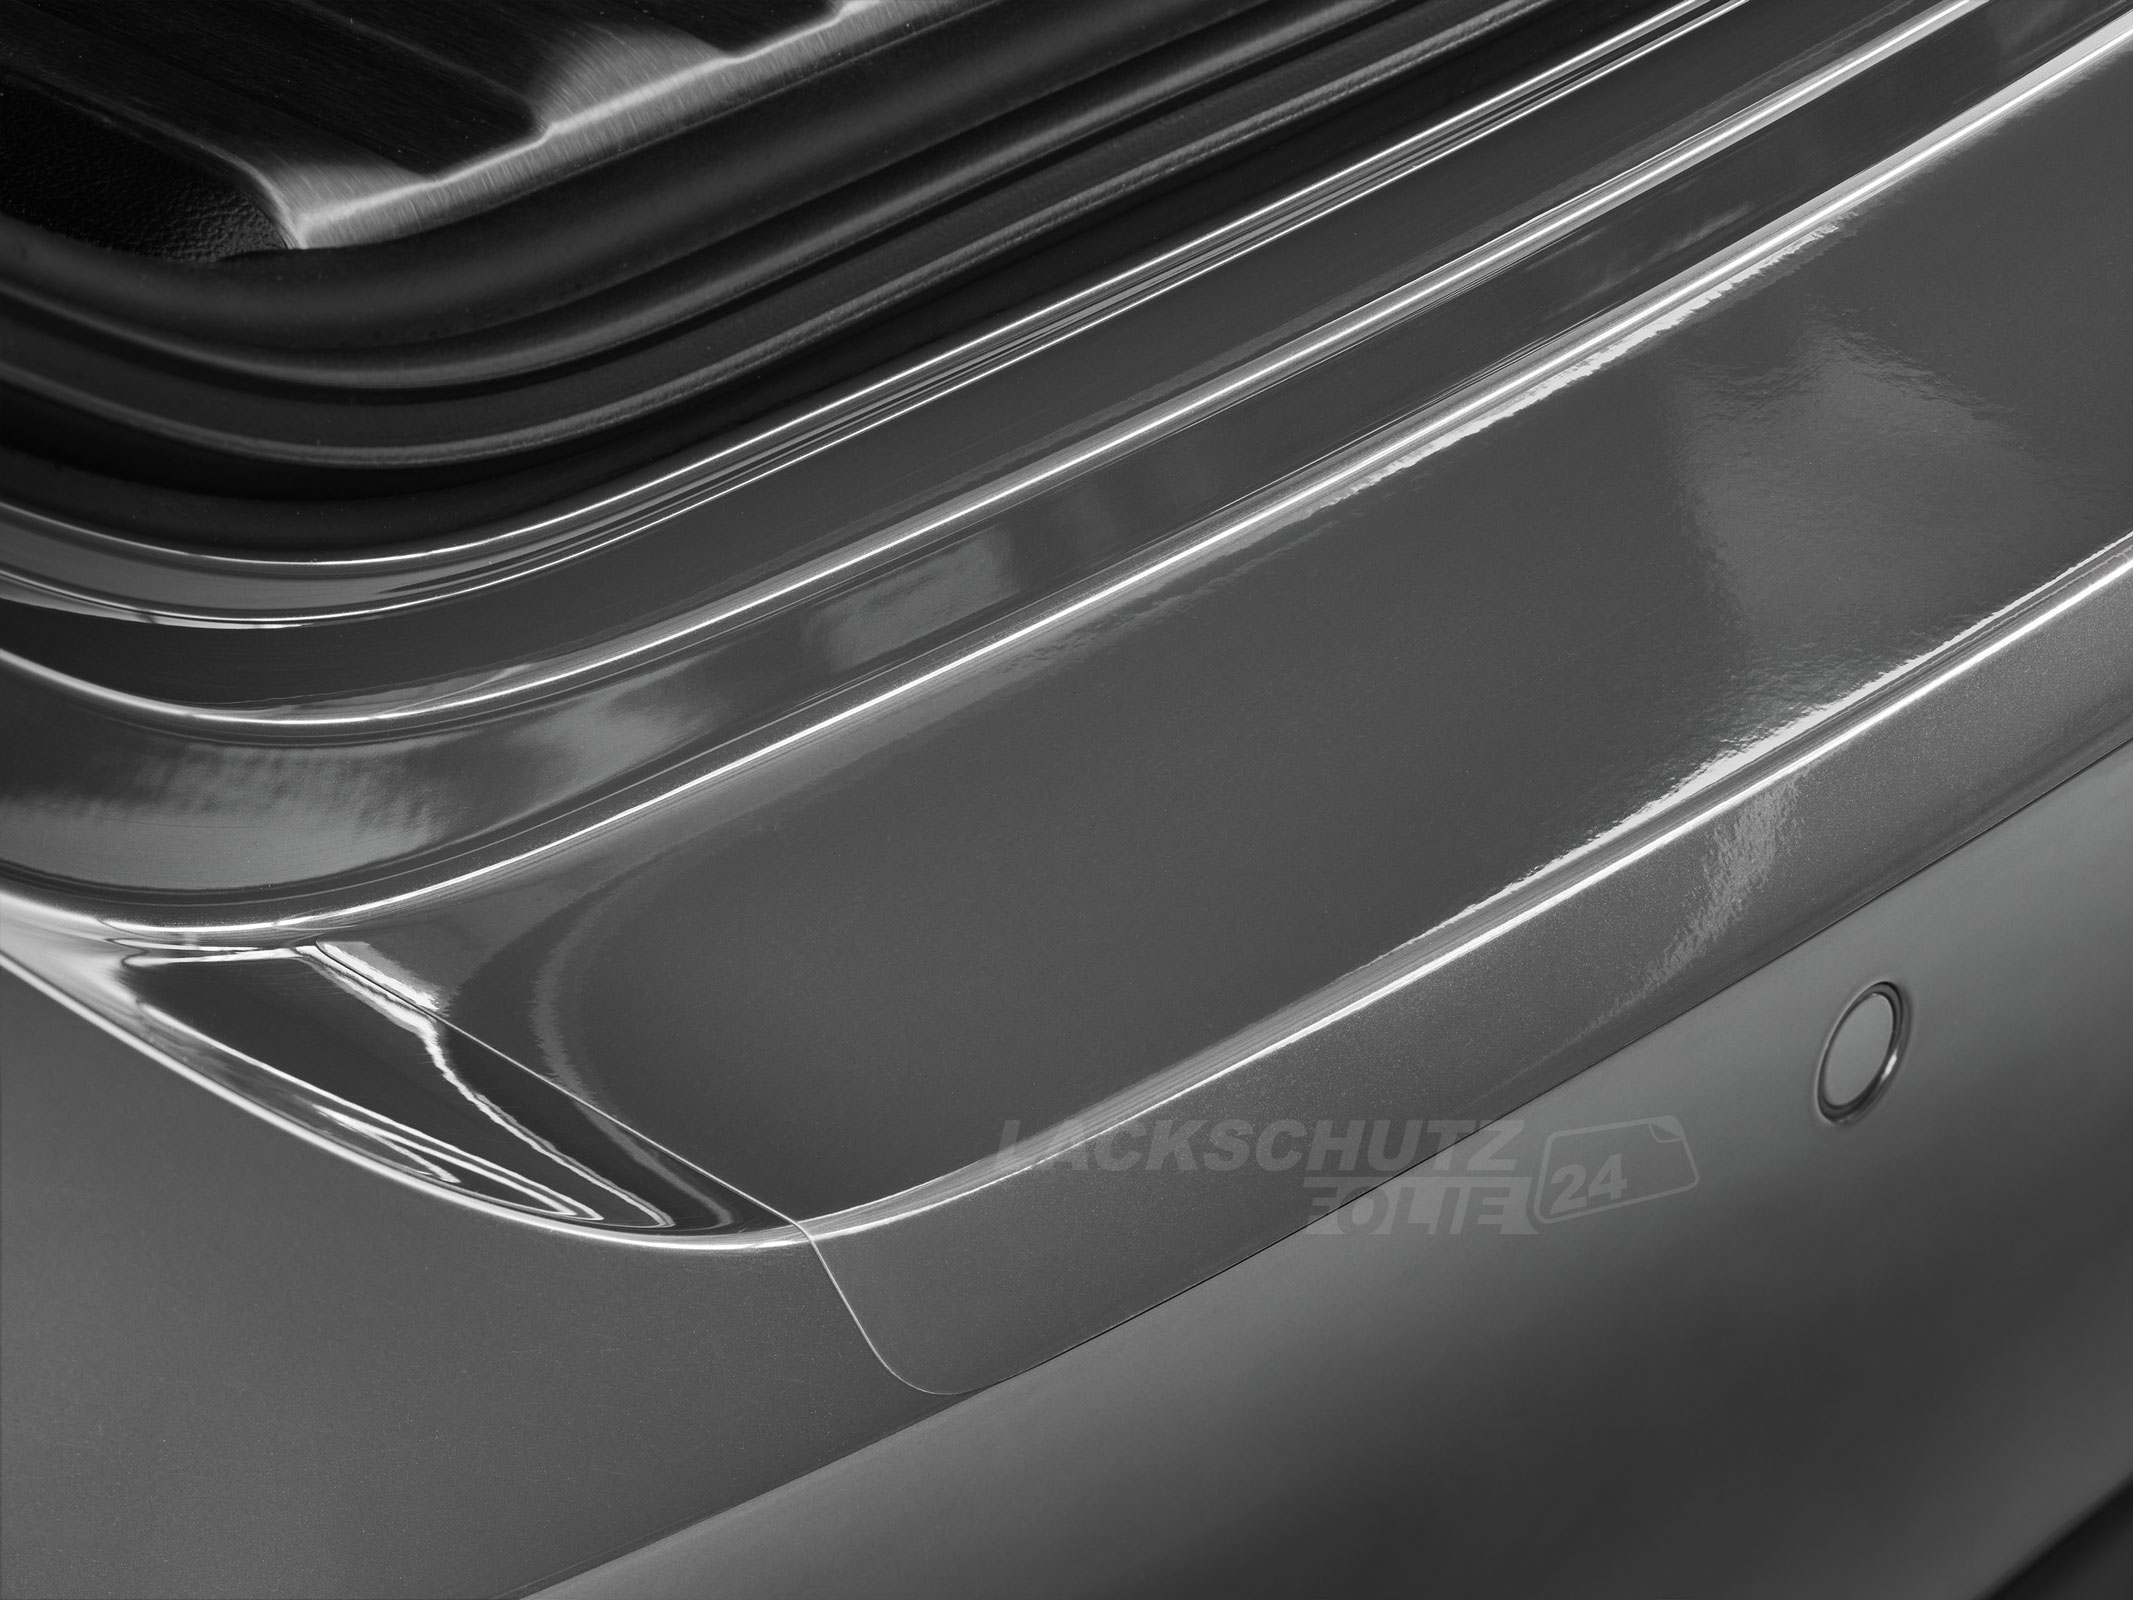 Ladekantenschutzfolie - Transparent Glatt Hochglänzend für Mercedes-Benz A-Klasse Typ W176, BJ 10/2012-05/2018